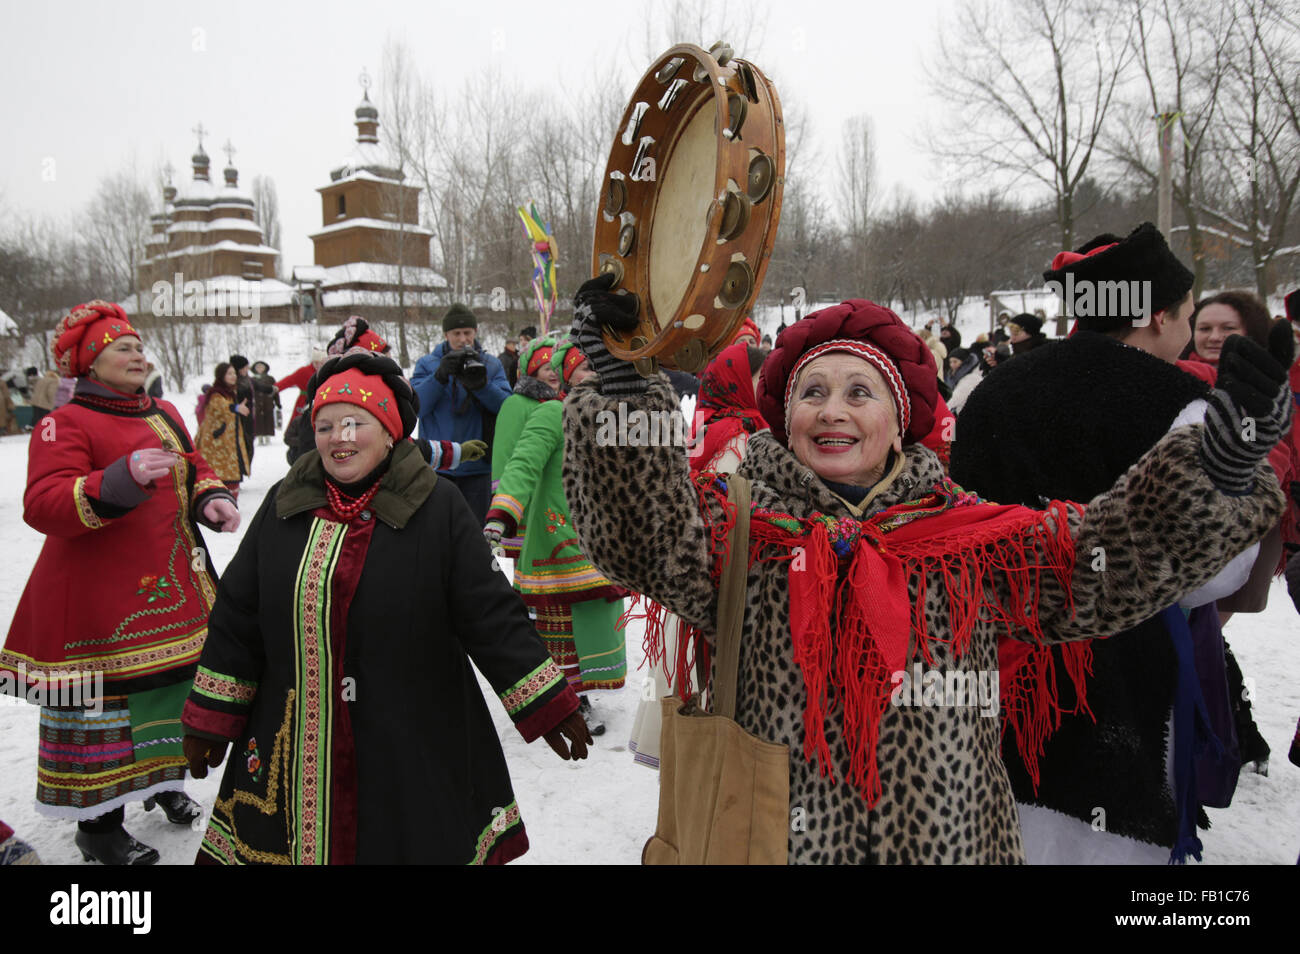 Il 4 dicembre, 2015 - Kiev, Ucraina - donne che indossano i costumi  tradizionali ucraine cantare i canti natalizi e balli durante la  celebrazione del Natale ortodosso a Kiev. (Credito Immagine: ©